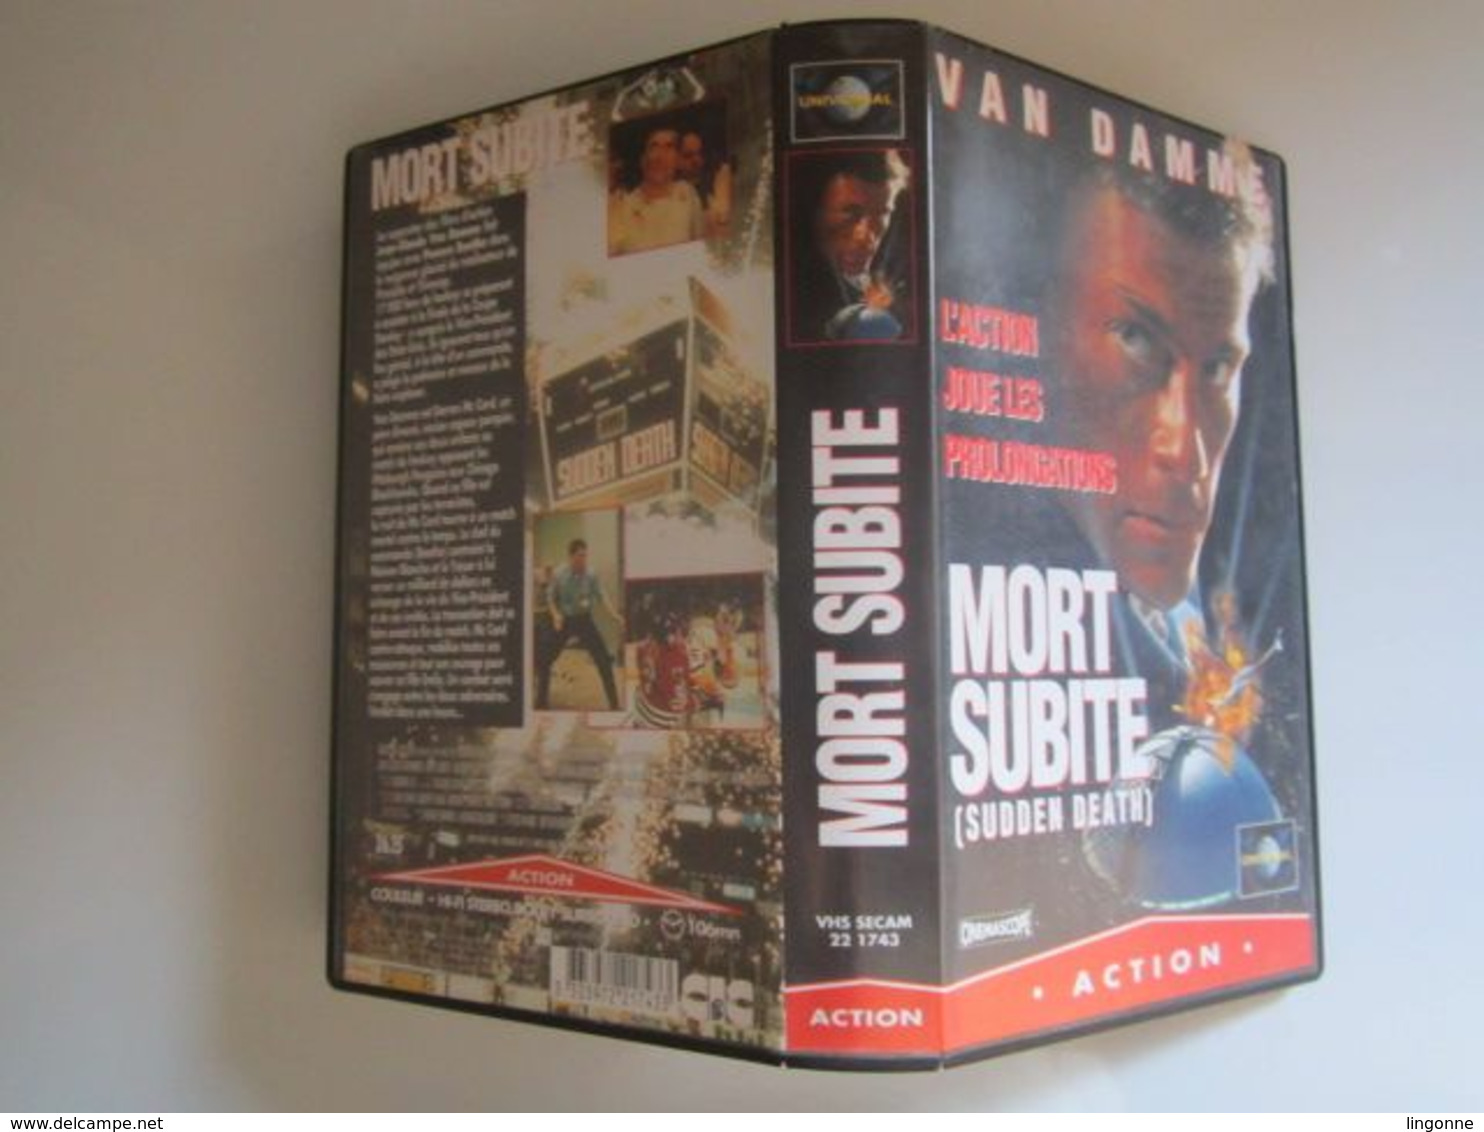 CASSETTE VIDEO VHS Van Damme – Mort Subite (Sudden Death) - Action, Aventure